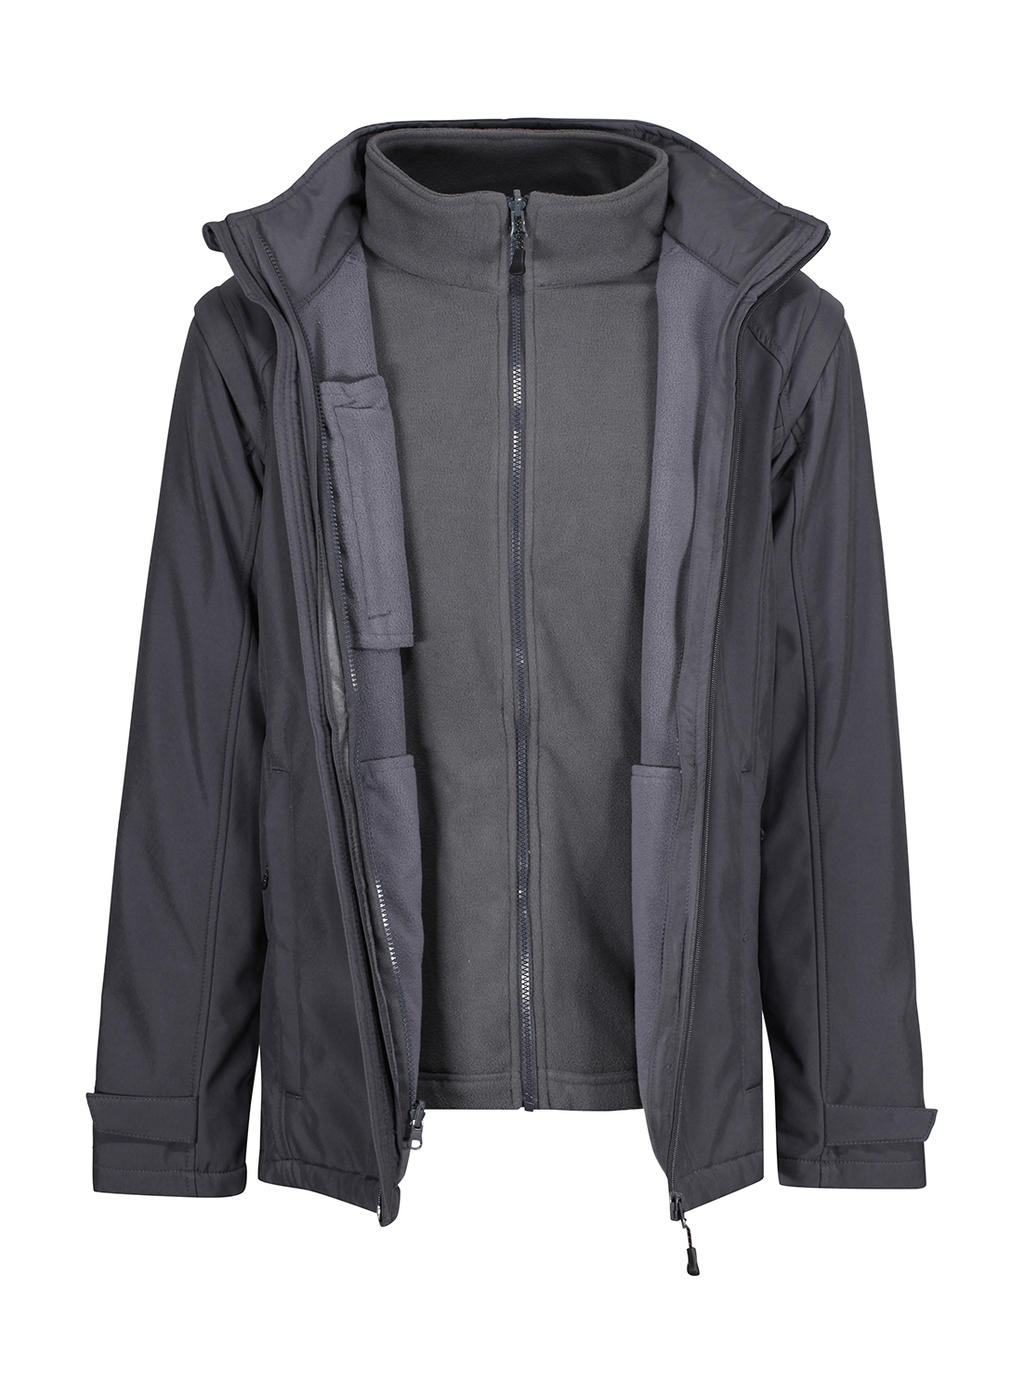  Erasmus 4-in-1 Softshell Jacket in Farbe Seal Grey/Seal Grey